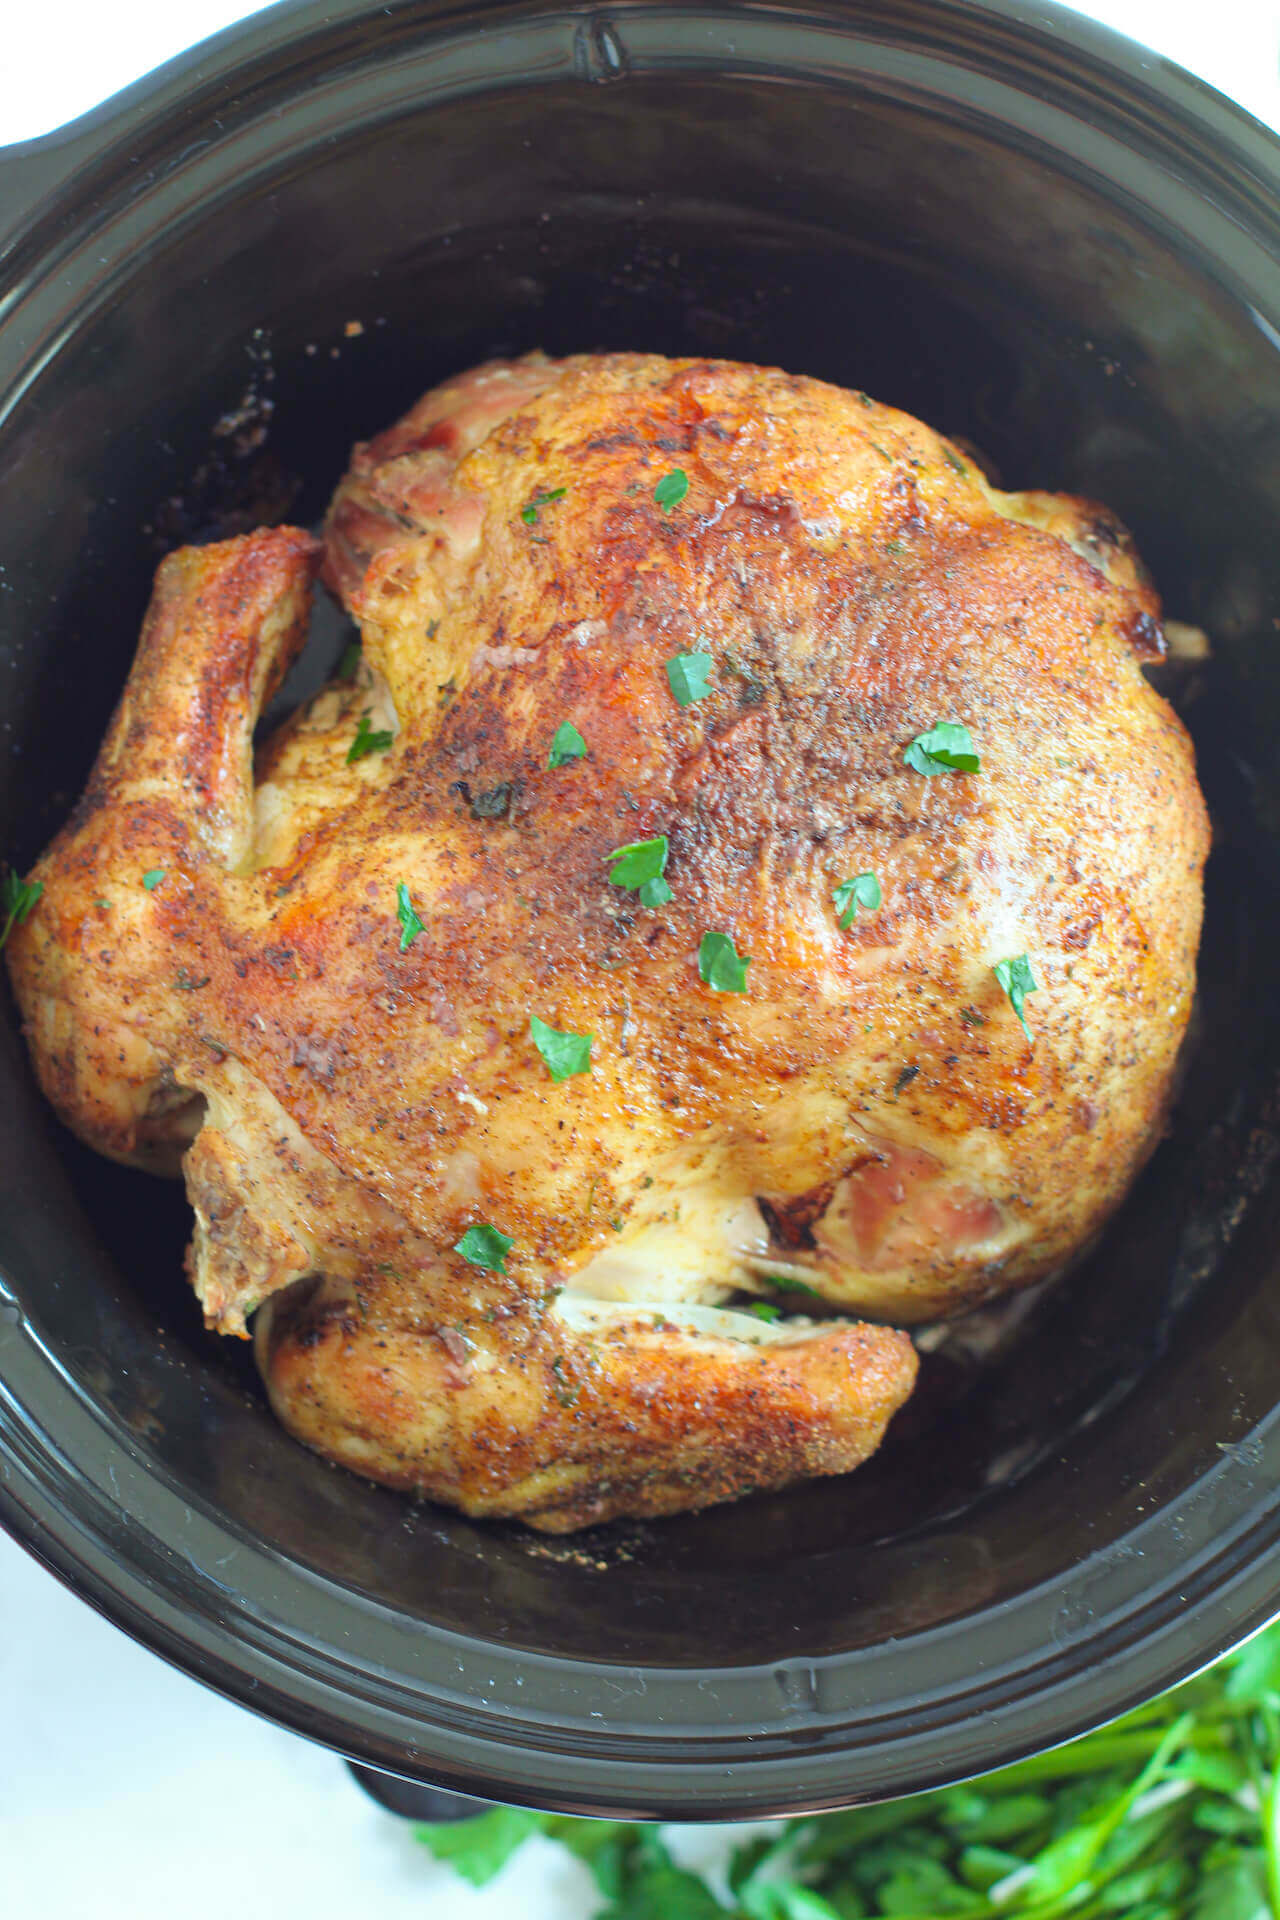 Roast chicken in the crock pot.